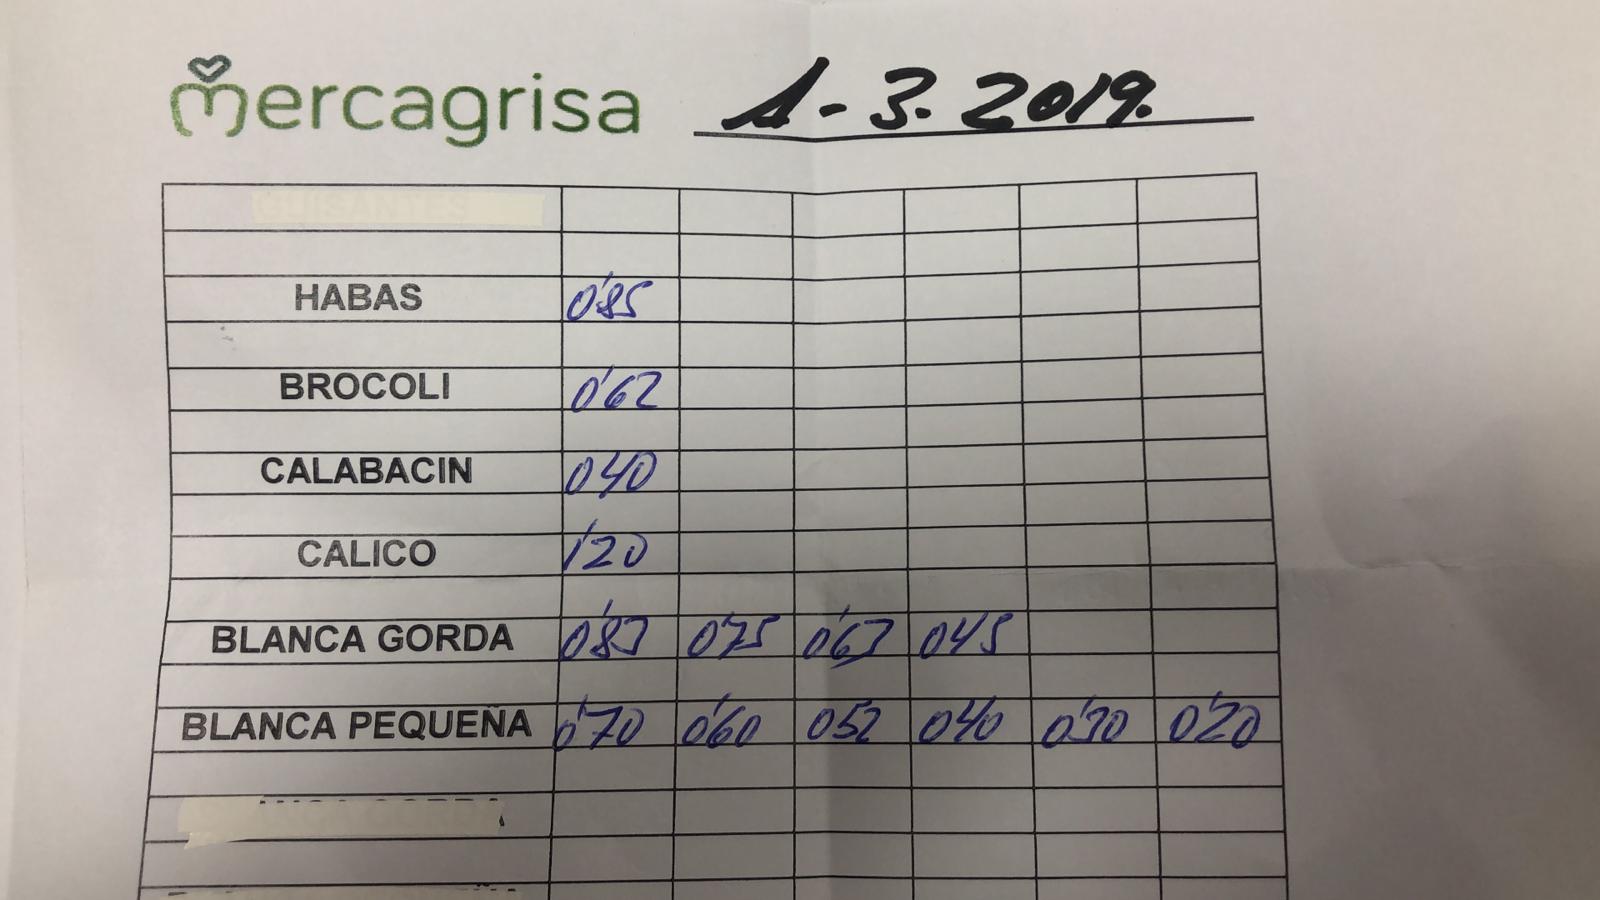 Subasta hortofrutícola Mercagrisa 1 de Marzo 2019